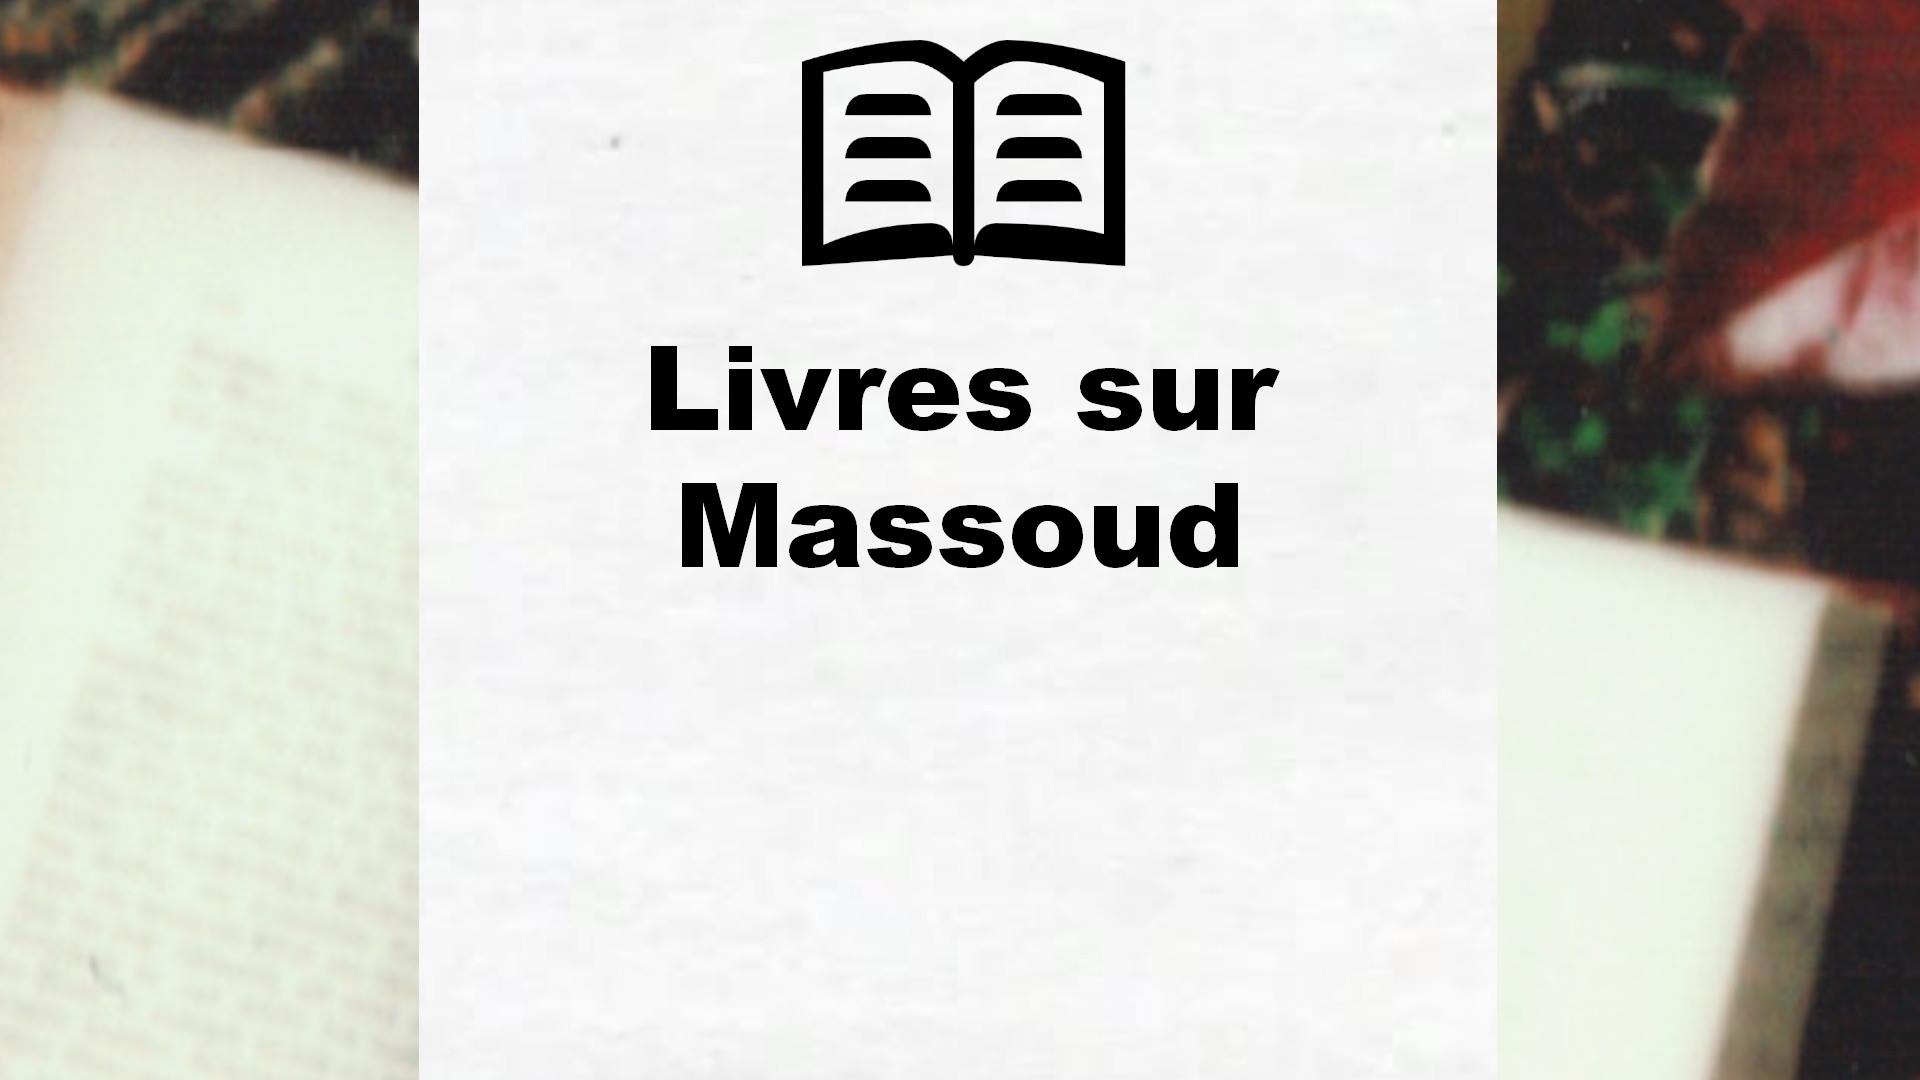 Livres sur Massoud